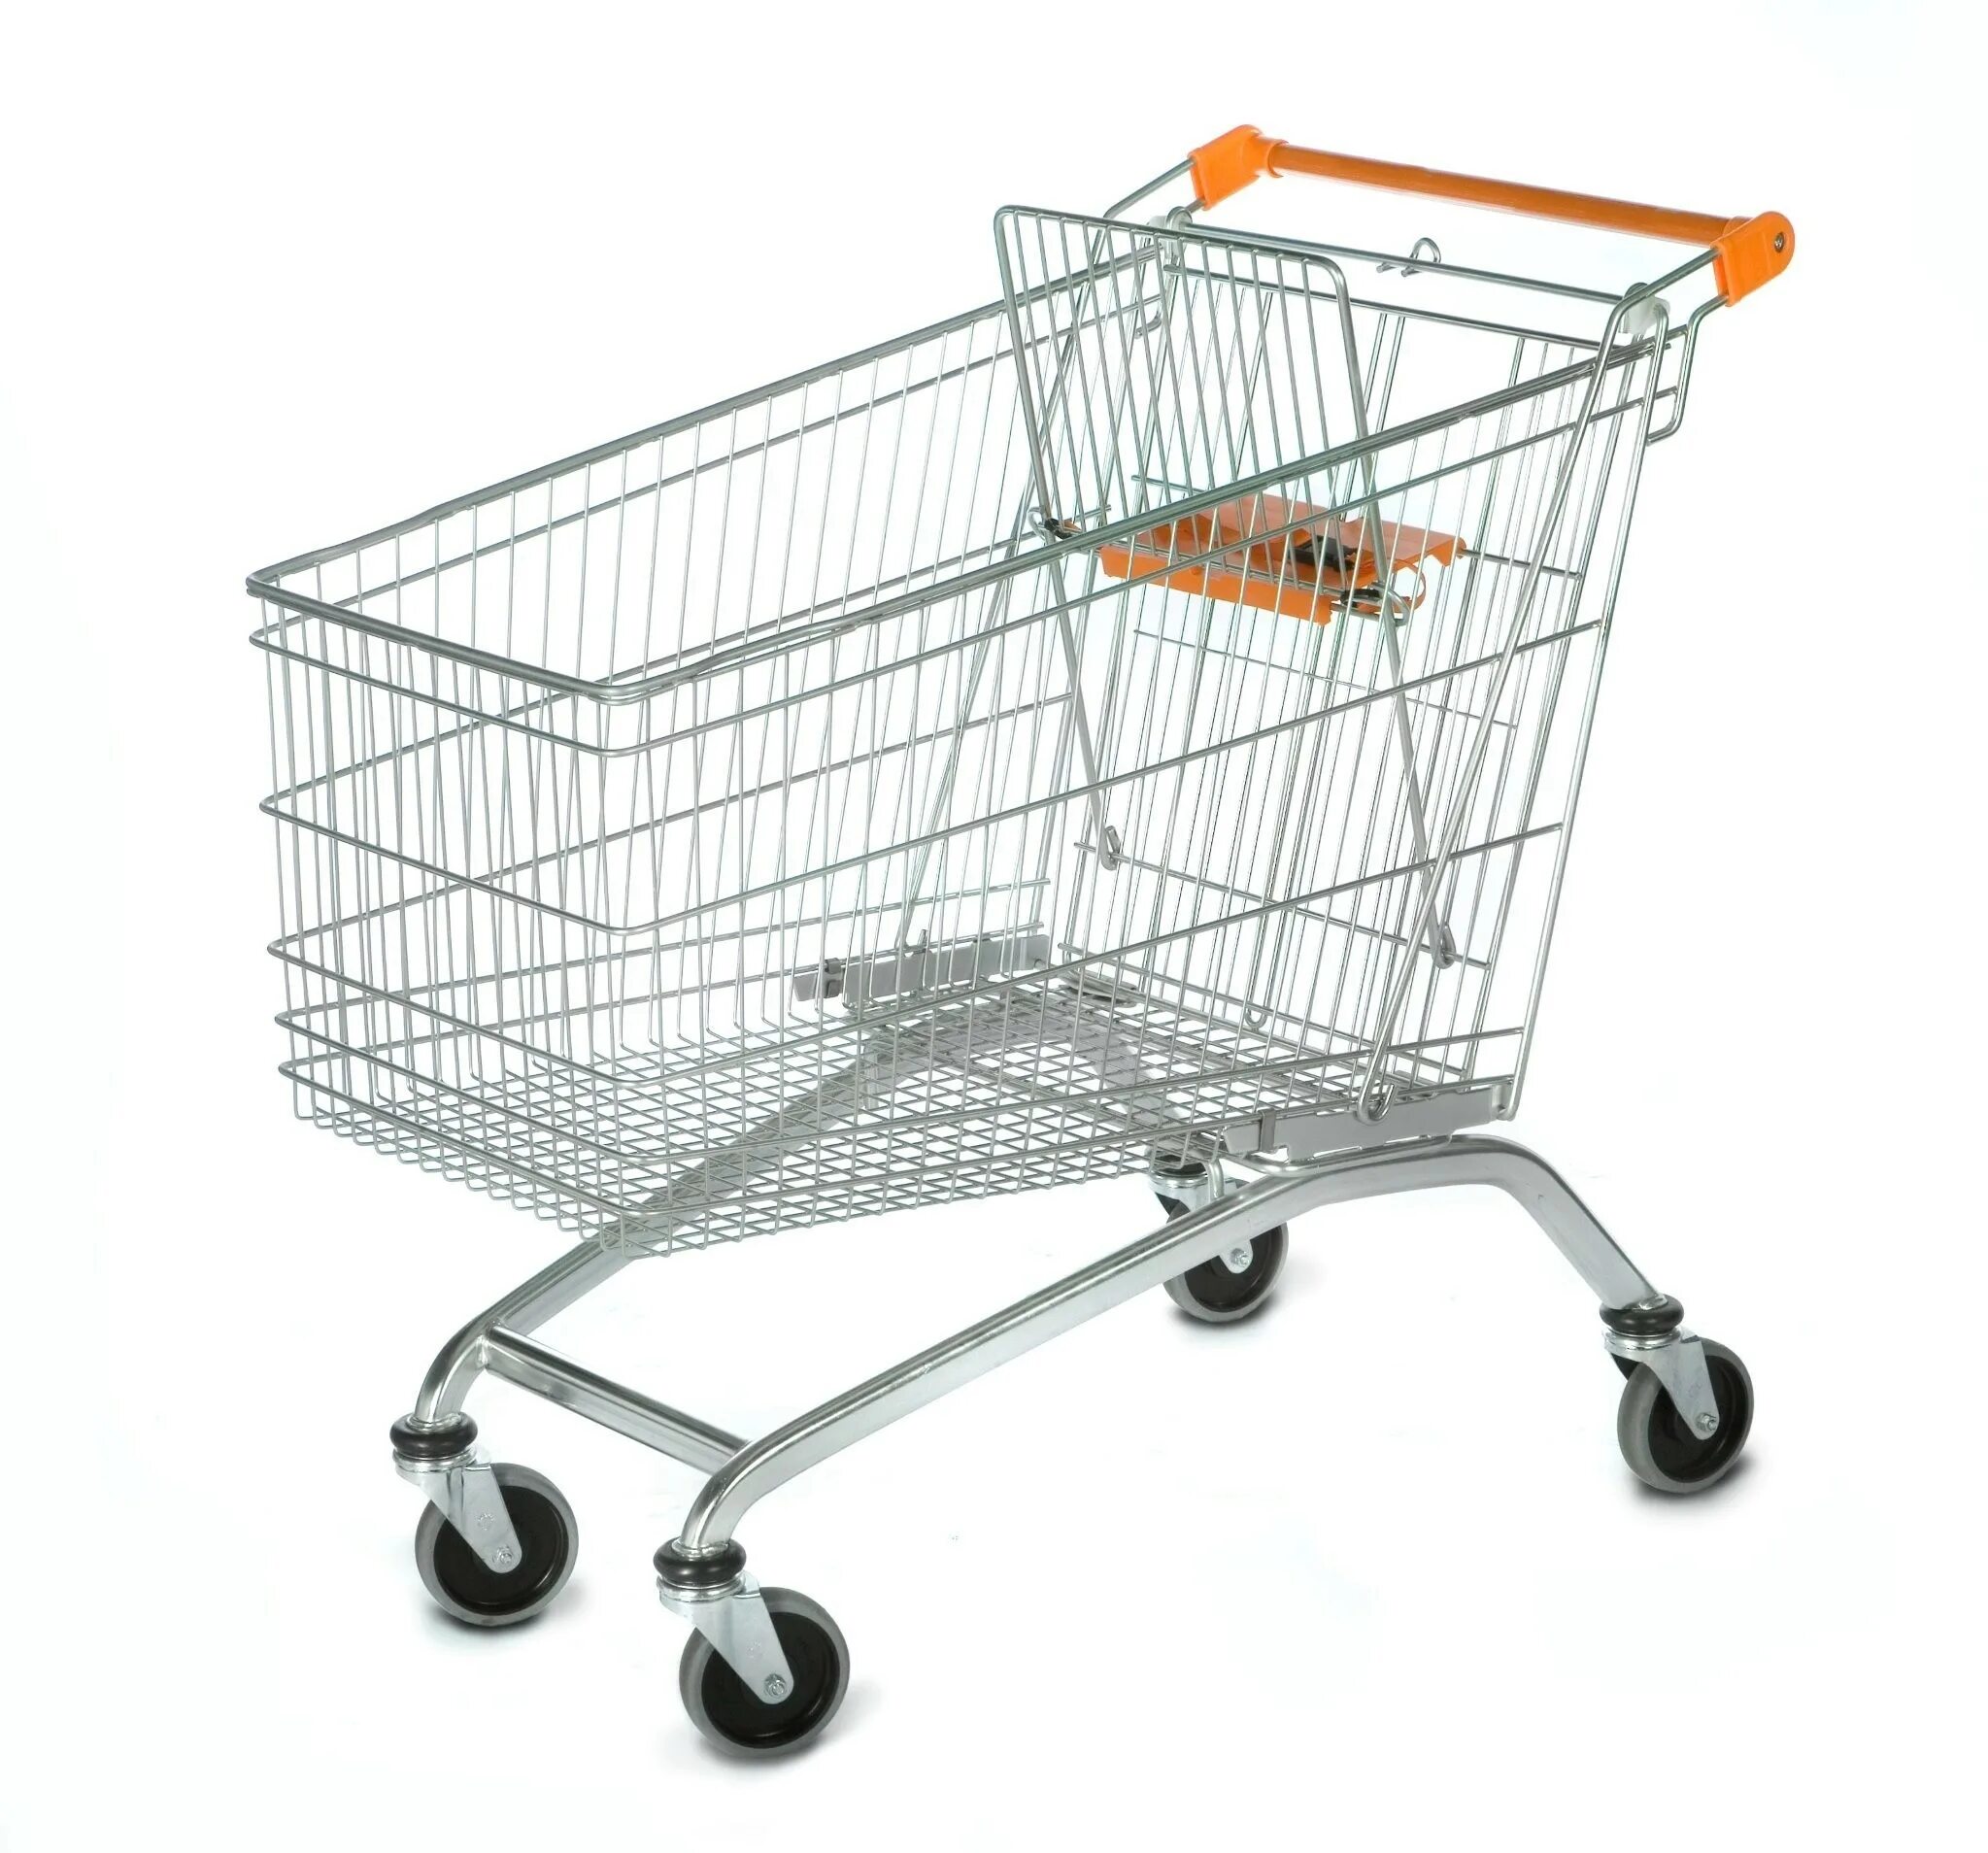 Тележка покупательская Оби. Тележка из супермаркета. Тележка для супермаркета. Тележка продуктовая на колесах. Product cart